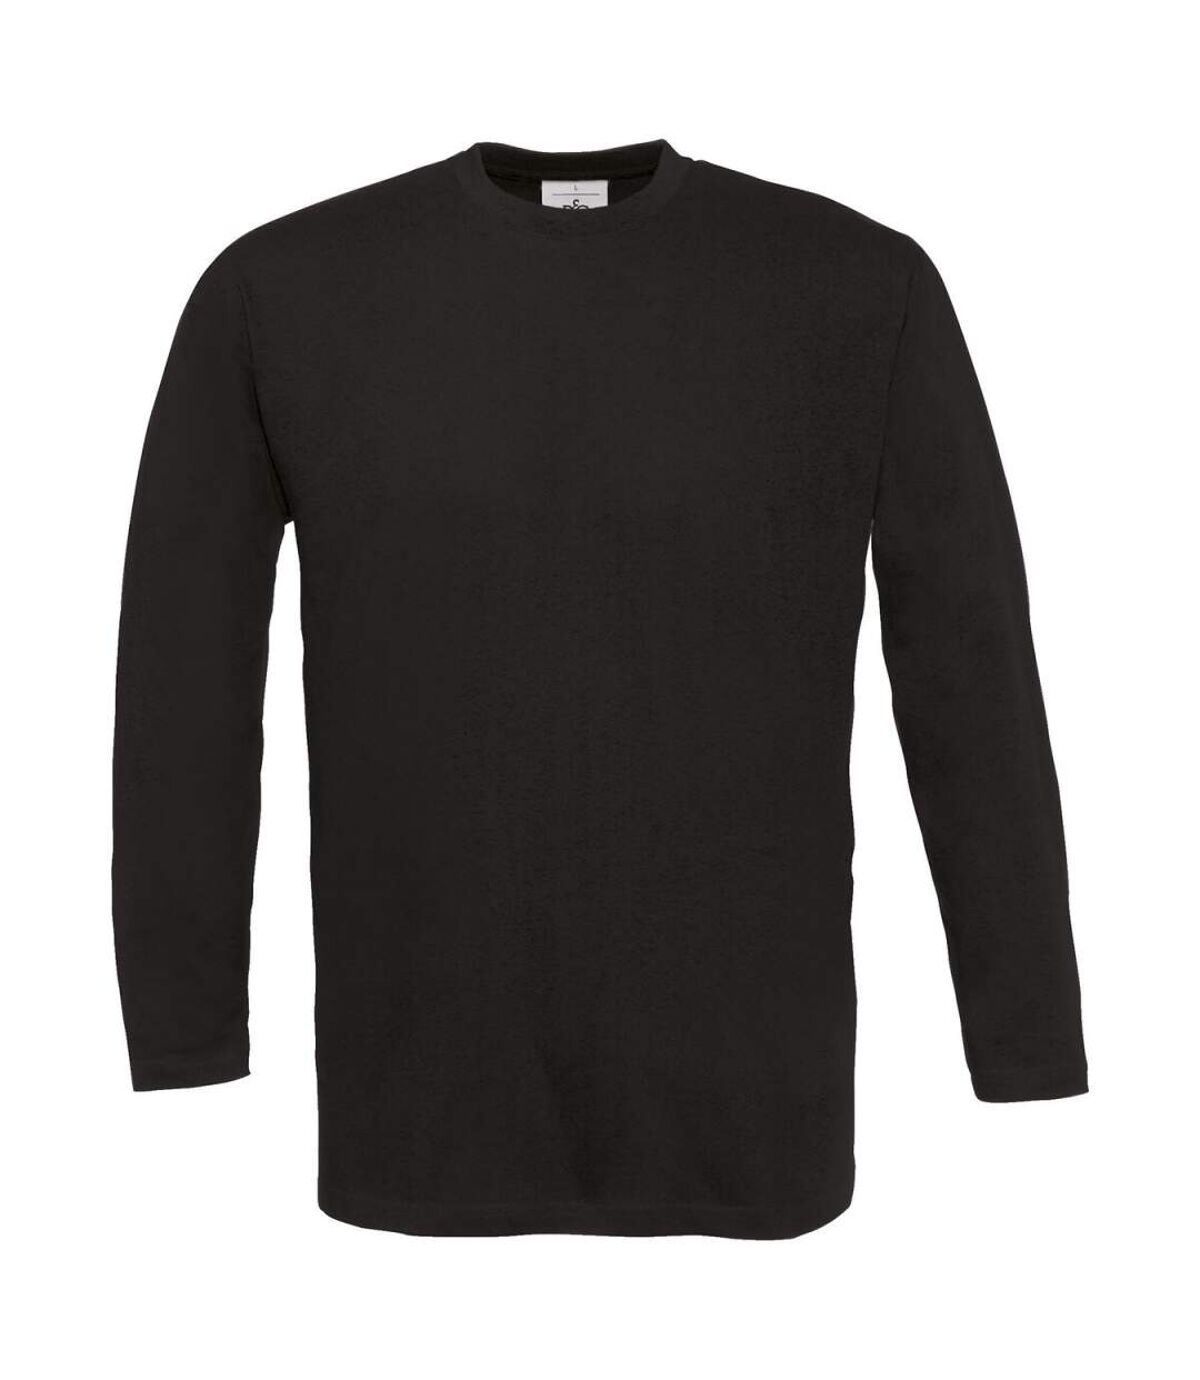 T-shirt manches longues homme - col rond - E190LSL - noir